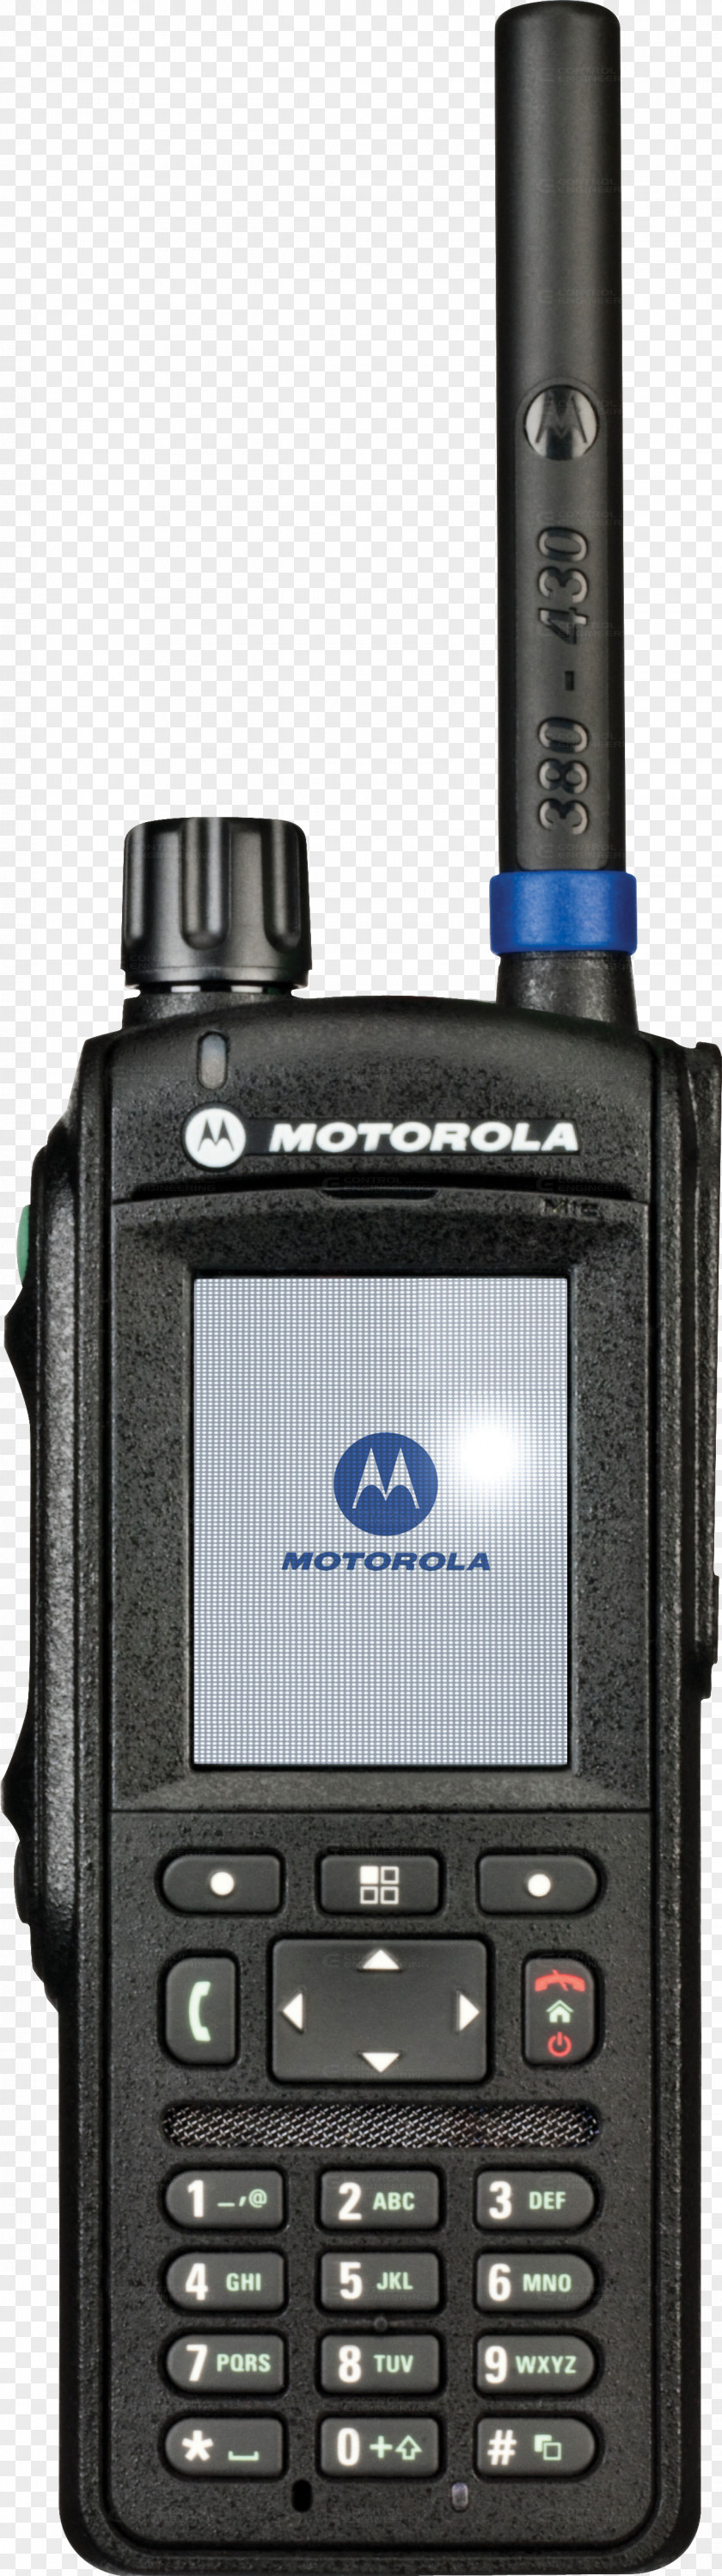 Motorola Startac Handheld Two-Way Radios Terrestrial Trunked Radio PNG